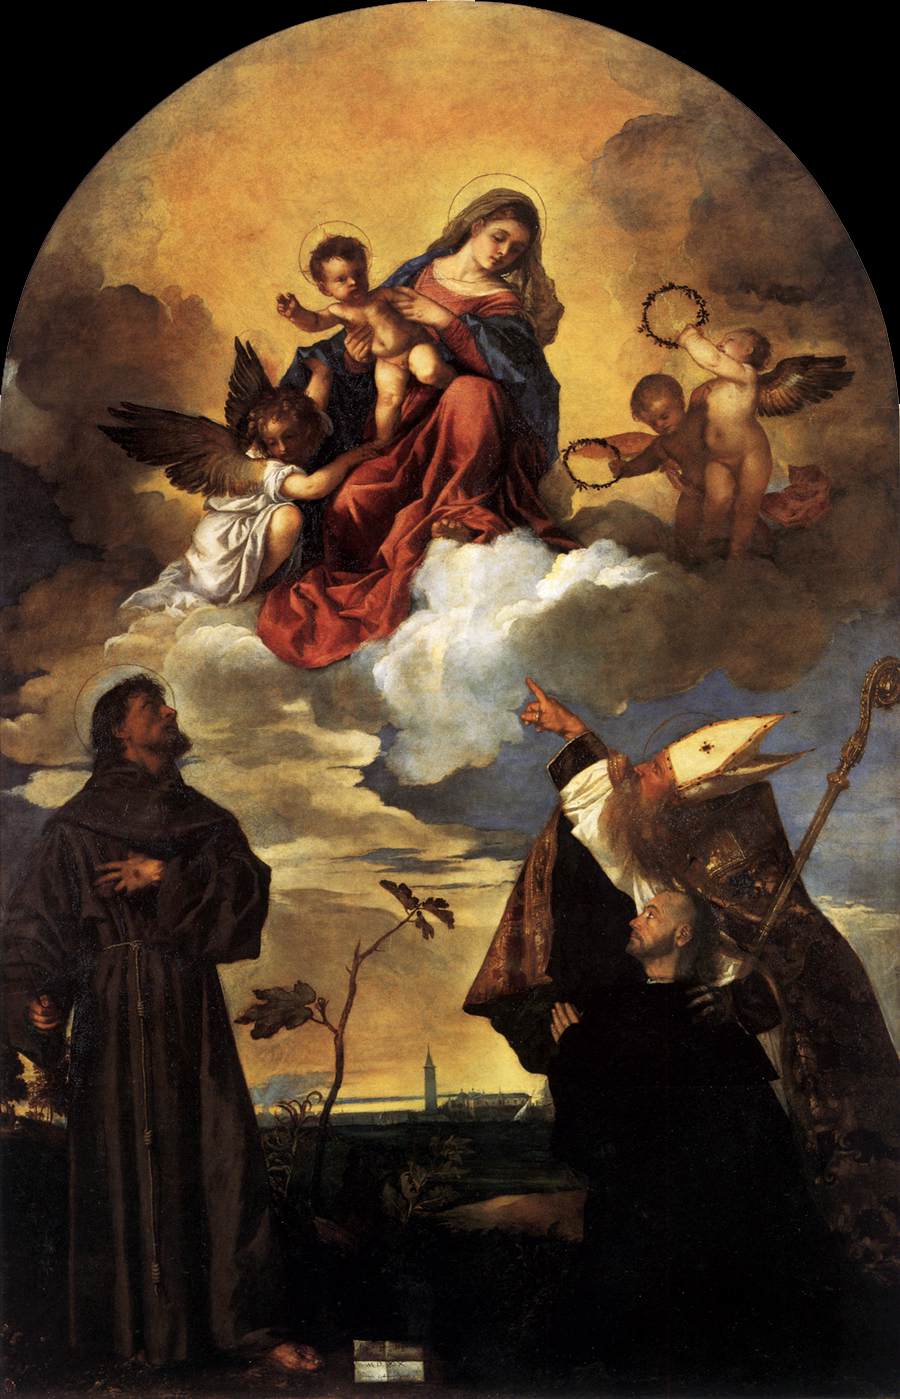 La Virgen en la Gloria con El Niño Jesucristo y San Francisco y Alvise con El Donante